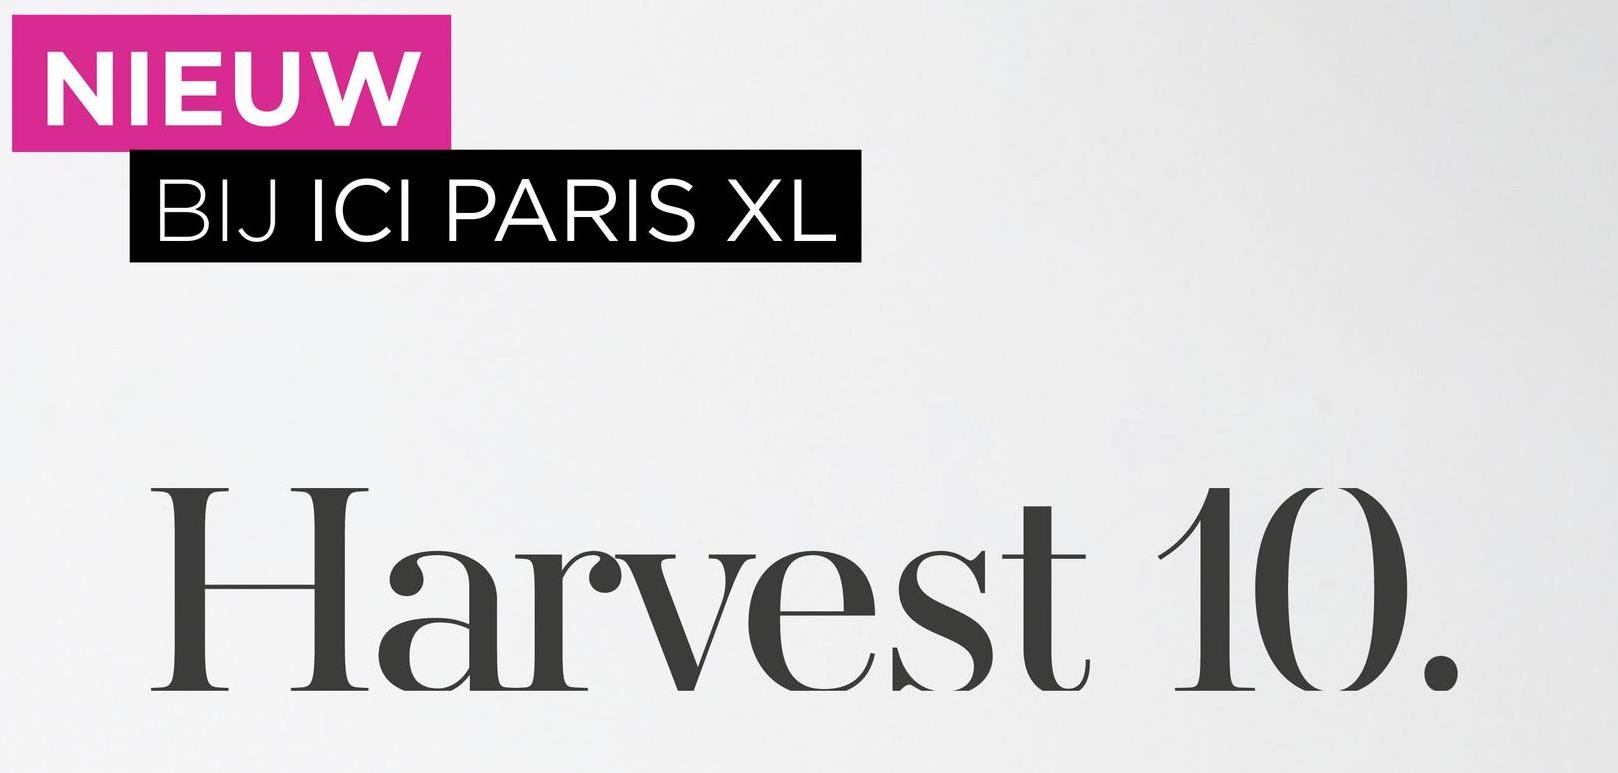 NIEUW
BIJ ICI PARIS XL
Harvest 10.
